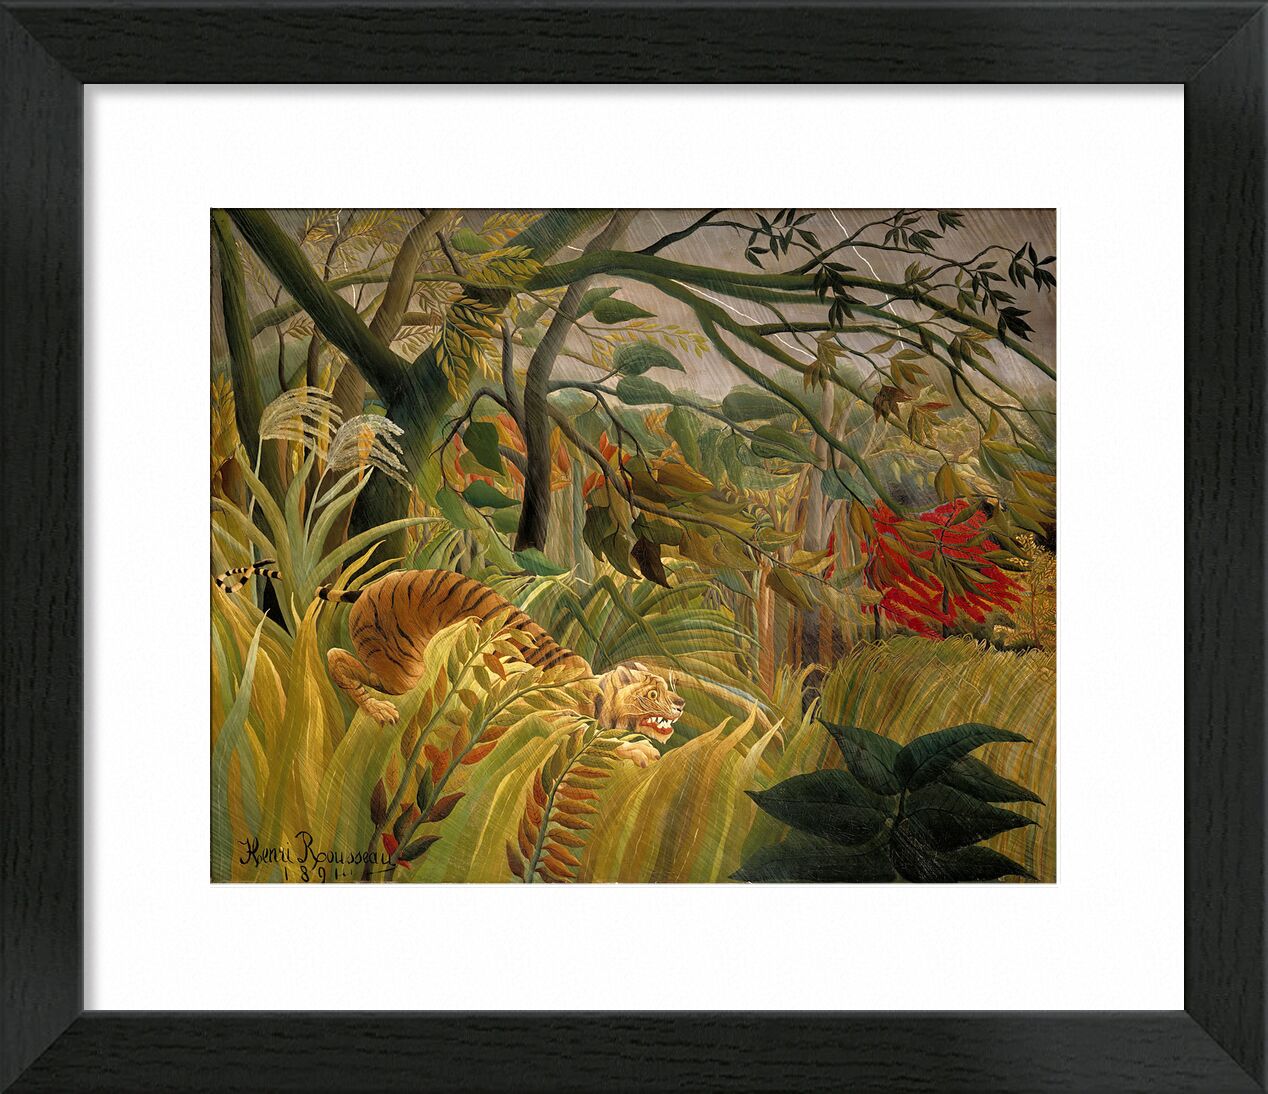 Tiger in einem tropischen Sturm von Bildende Kunst, Prodi Art, Rousseau, Wendekreis, Dschungel, Bäume, Tiger, Blumen, Henri